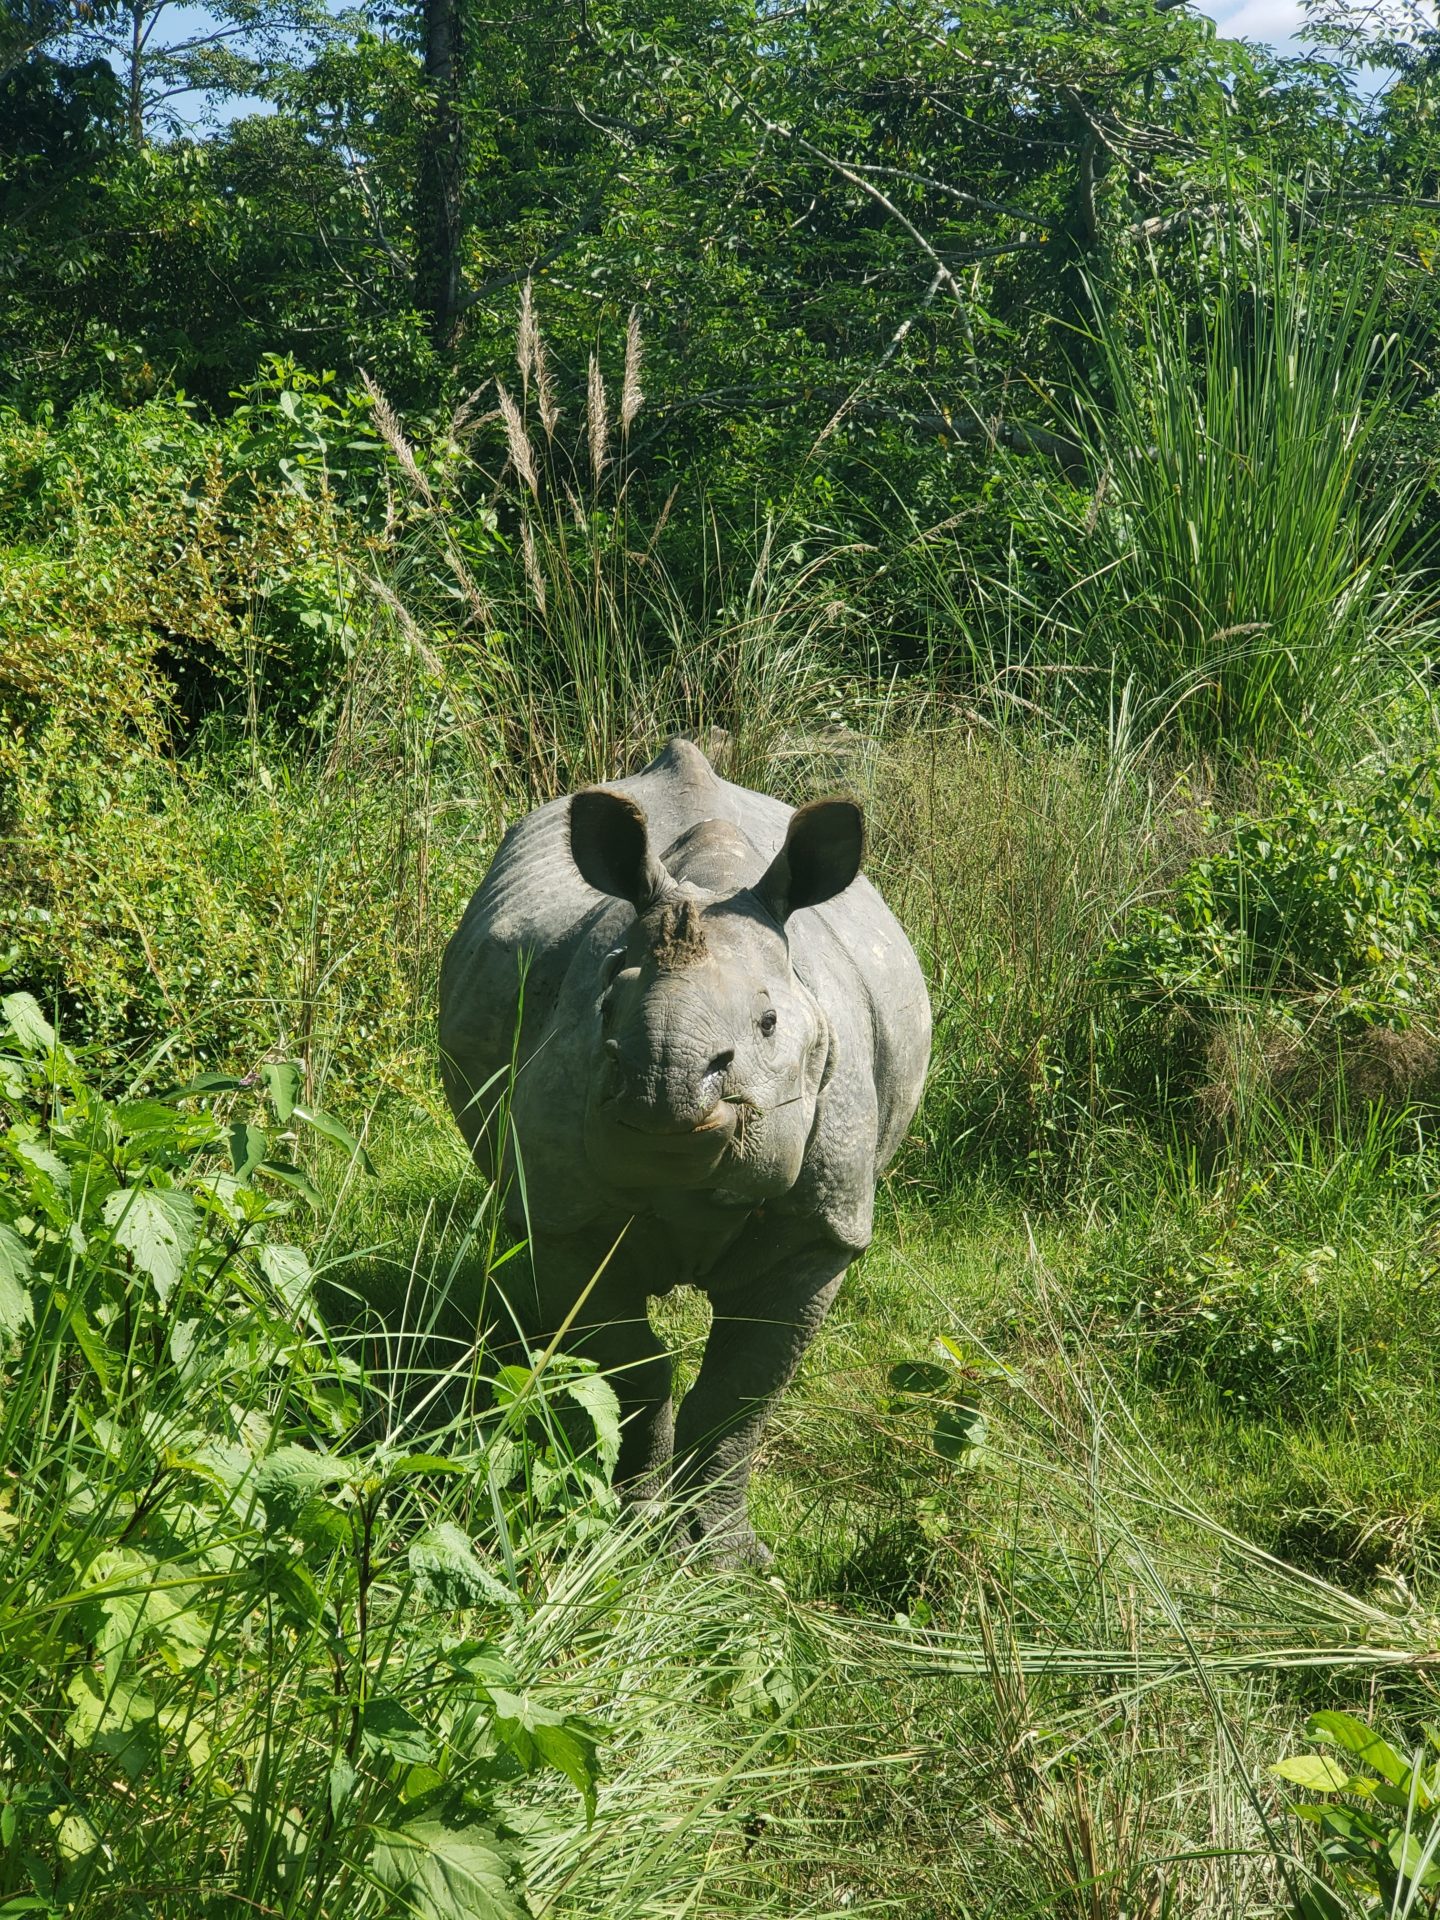 a rhinoceros in a grassy area